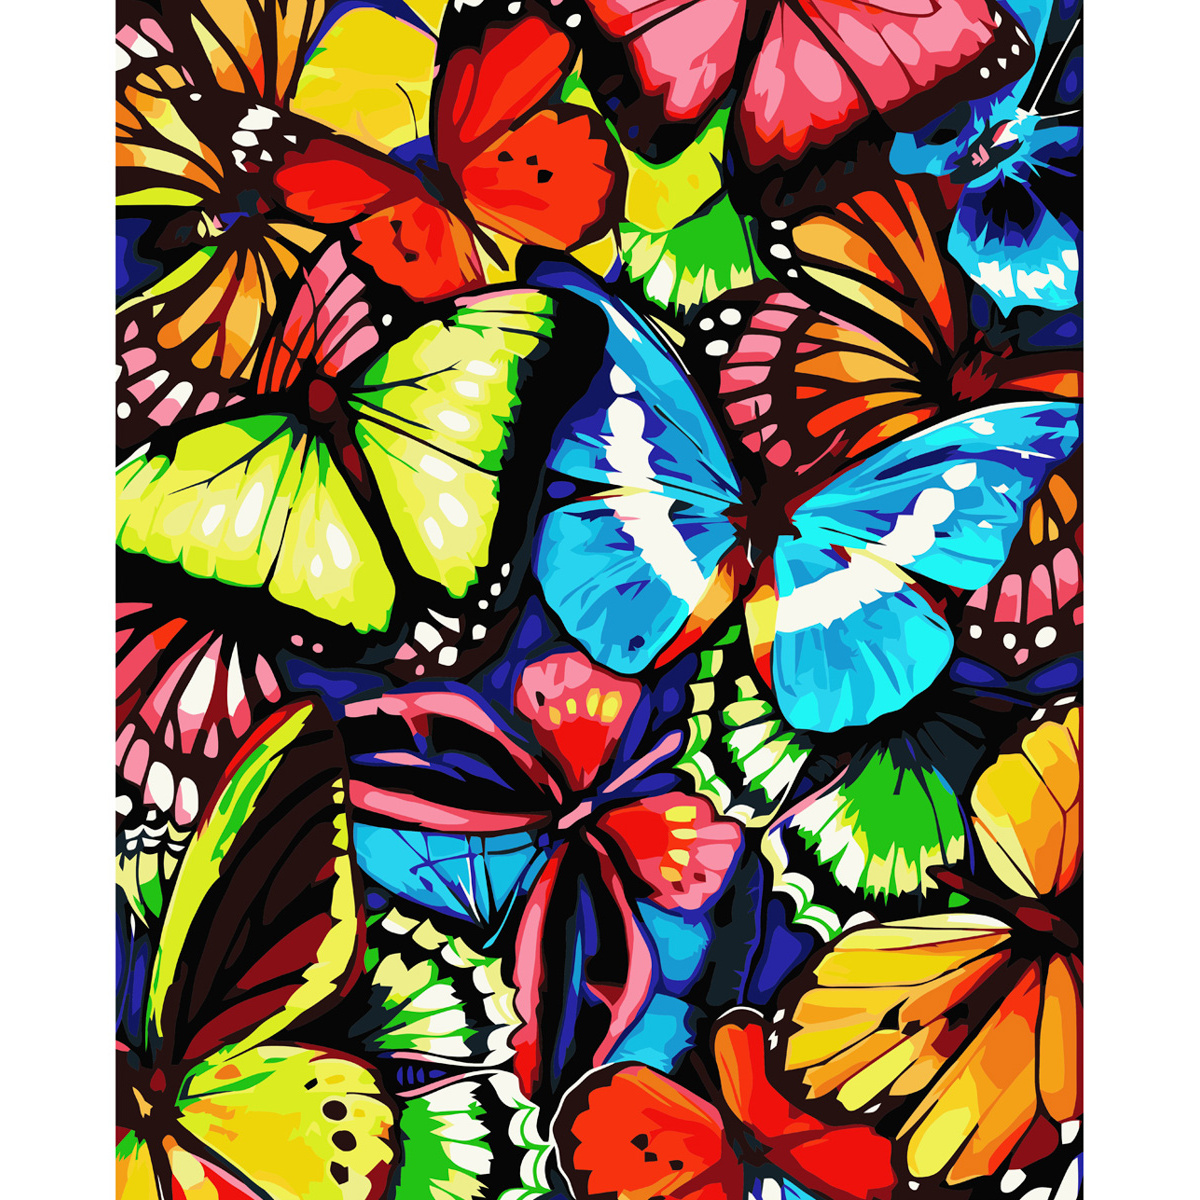 Malen nach Zahlen Strateg mehrfarbige Schmetterlinge mit Lackgröße 40x50 cm (VA-3576)